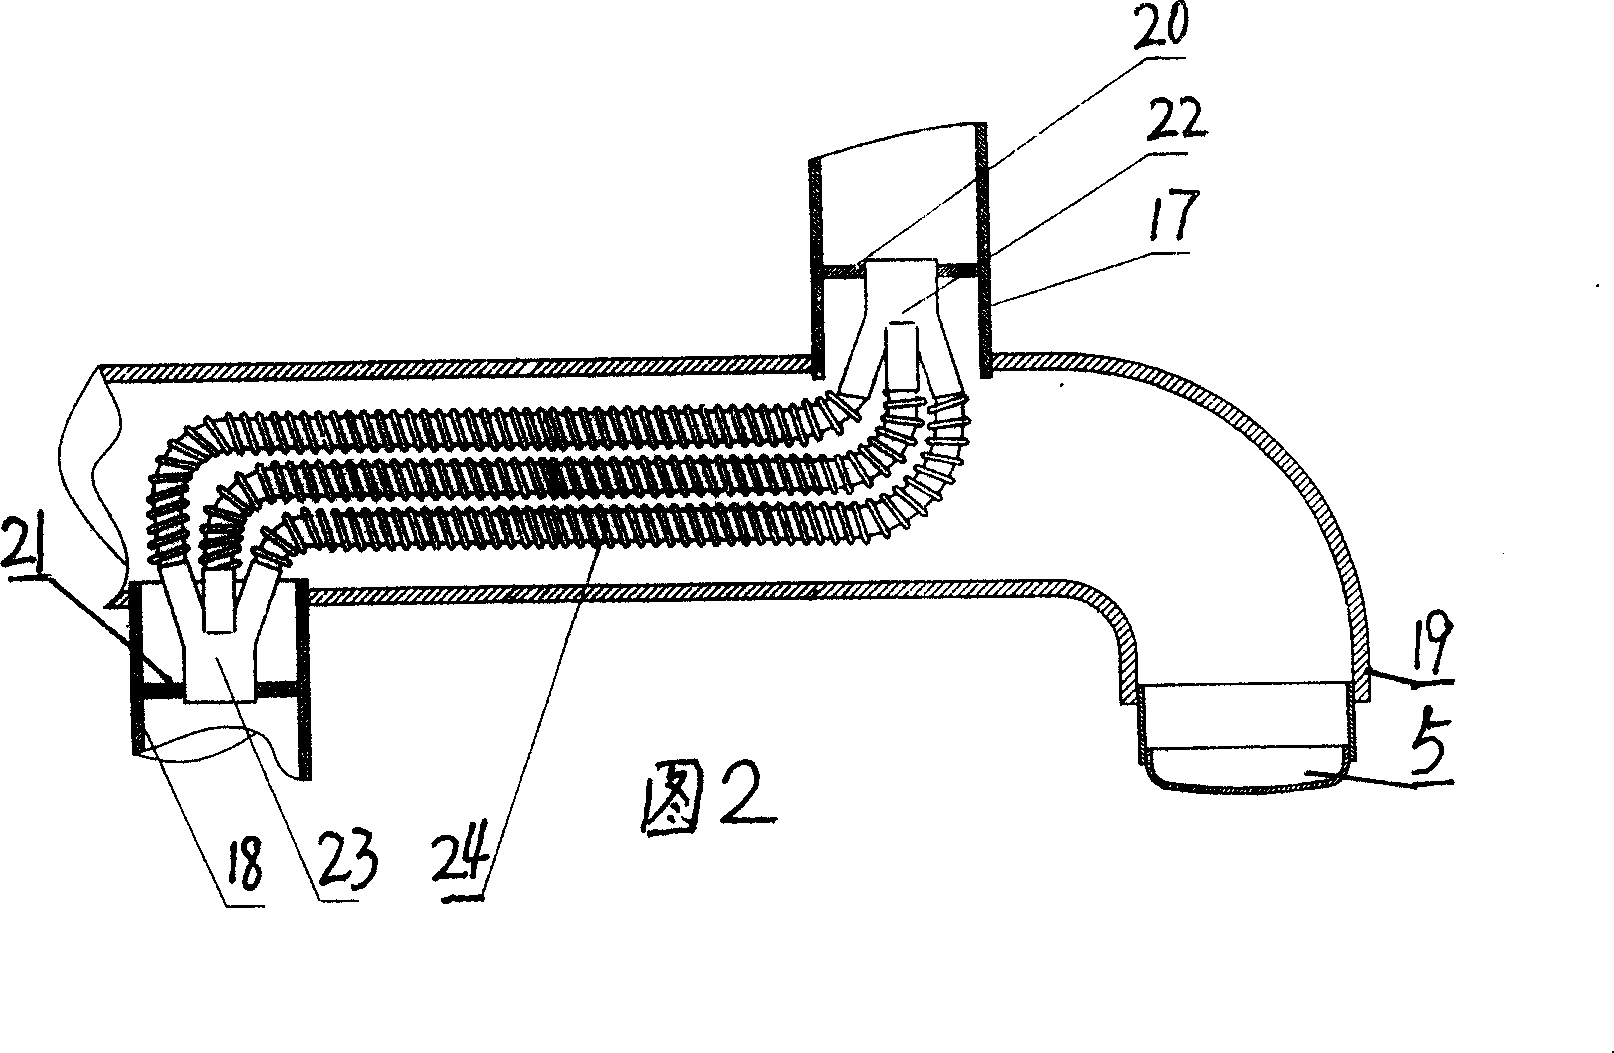 Flexible fluid-directing double-spiral-sleeve type heat exchanger